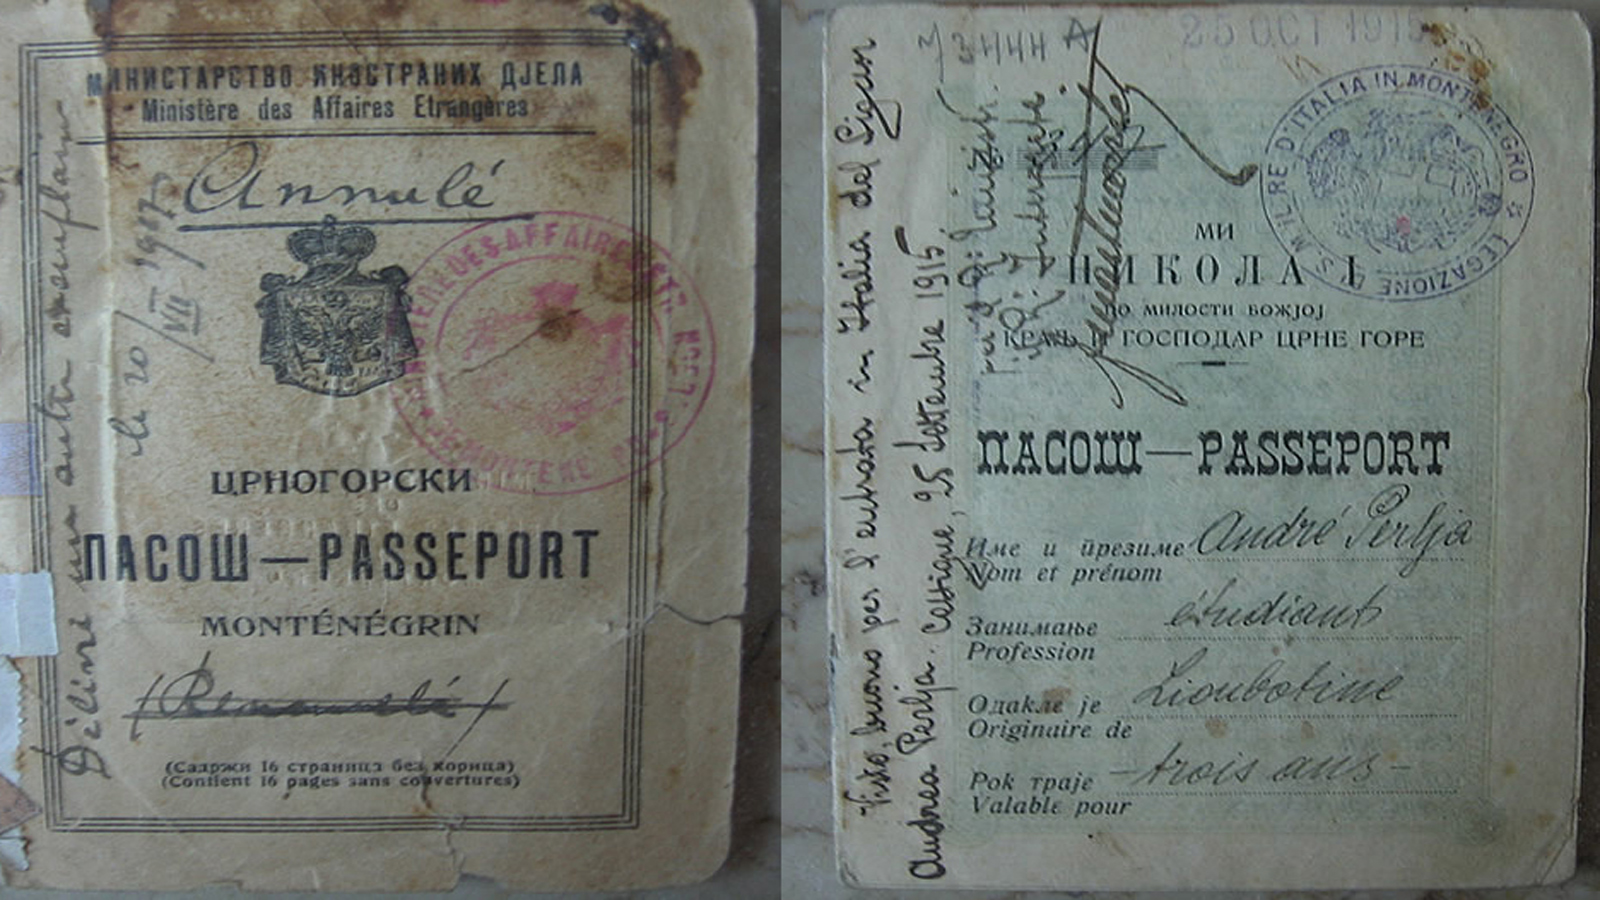 Montenegro passports